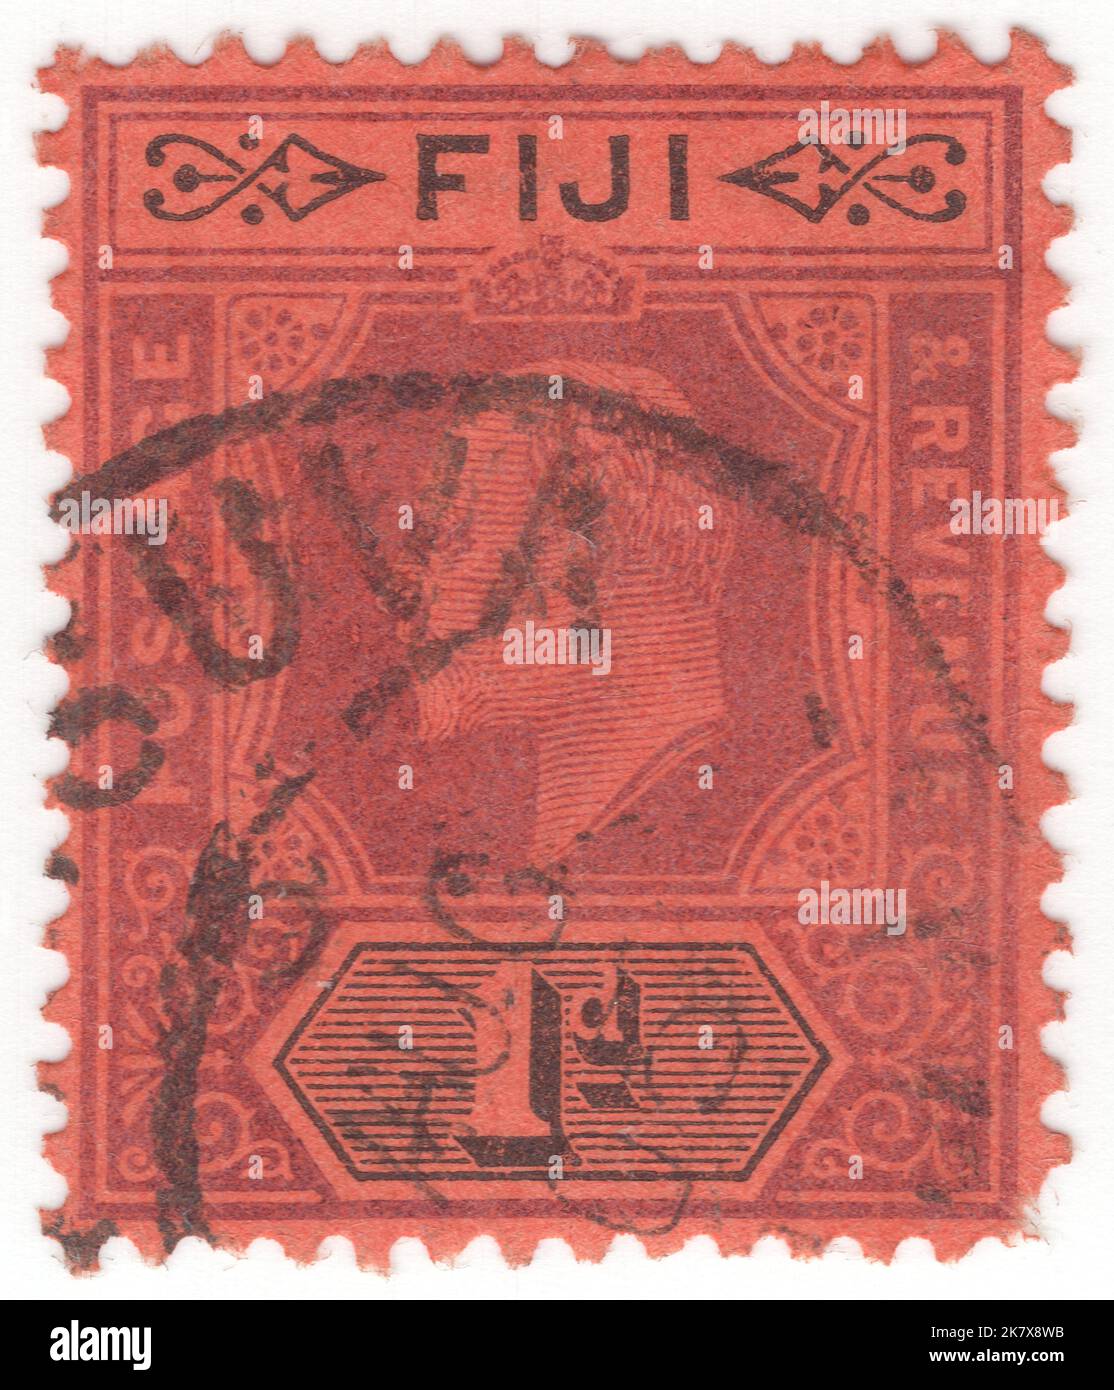 FIJI - 1903 de febrero de 1: Un sello de franqueo negro y violeta de 1 pence en rojo que representa el retrato del rey Eduardo VII Foto de stock